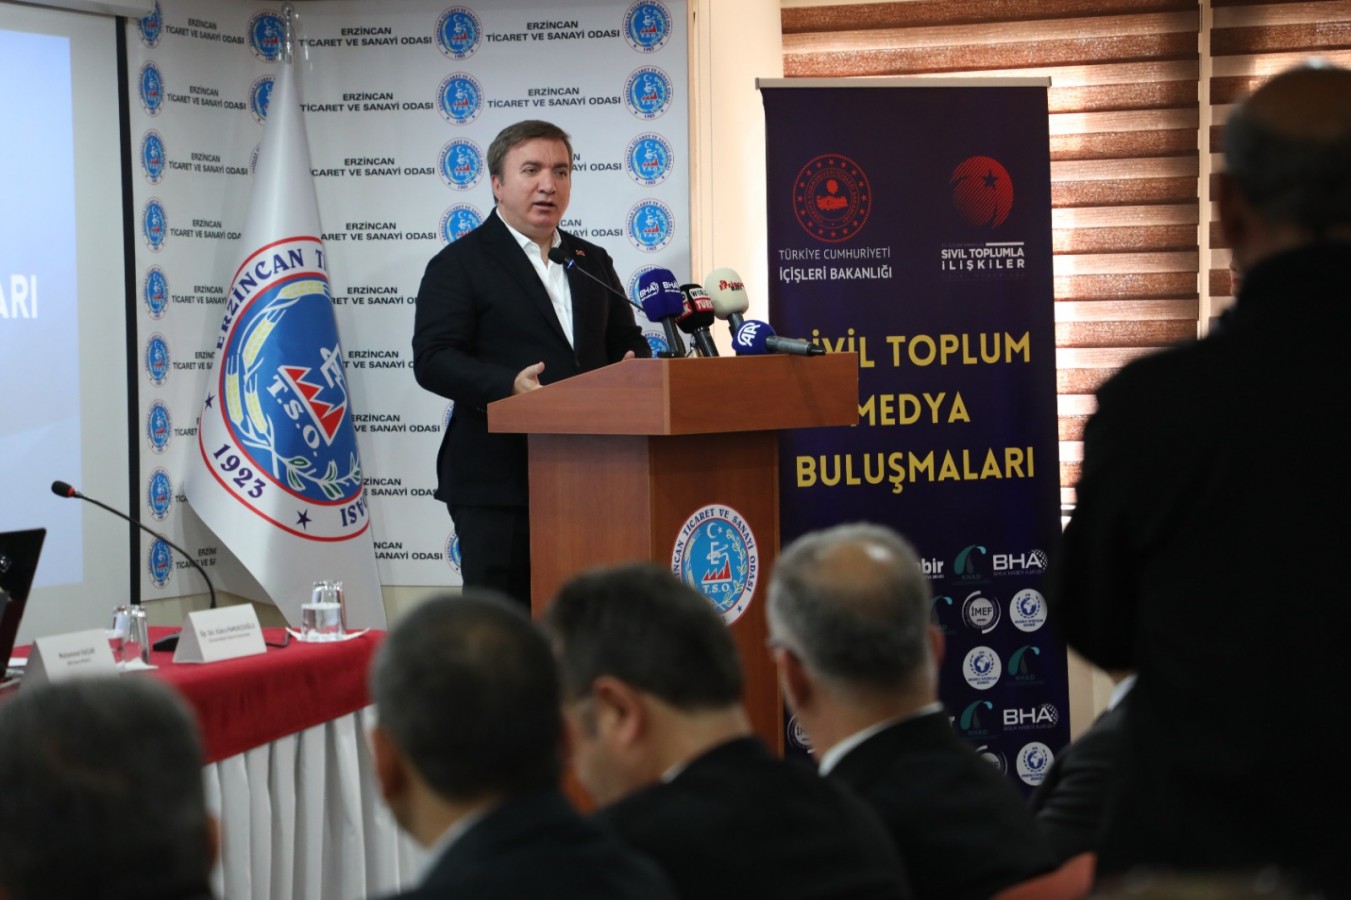 Erzincan’da ‘Sivil Toplum Medya Buluşmaları’